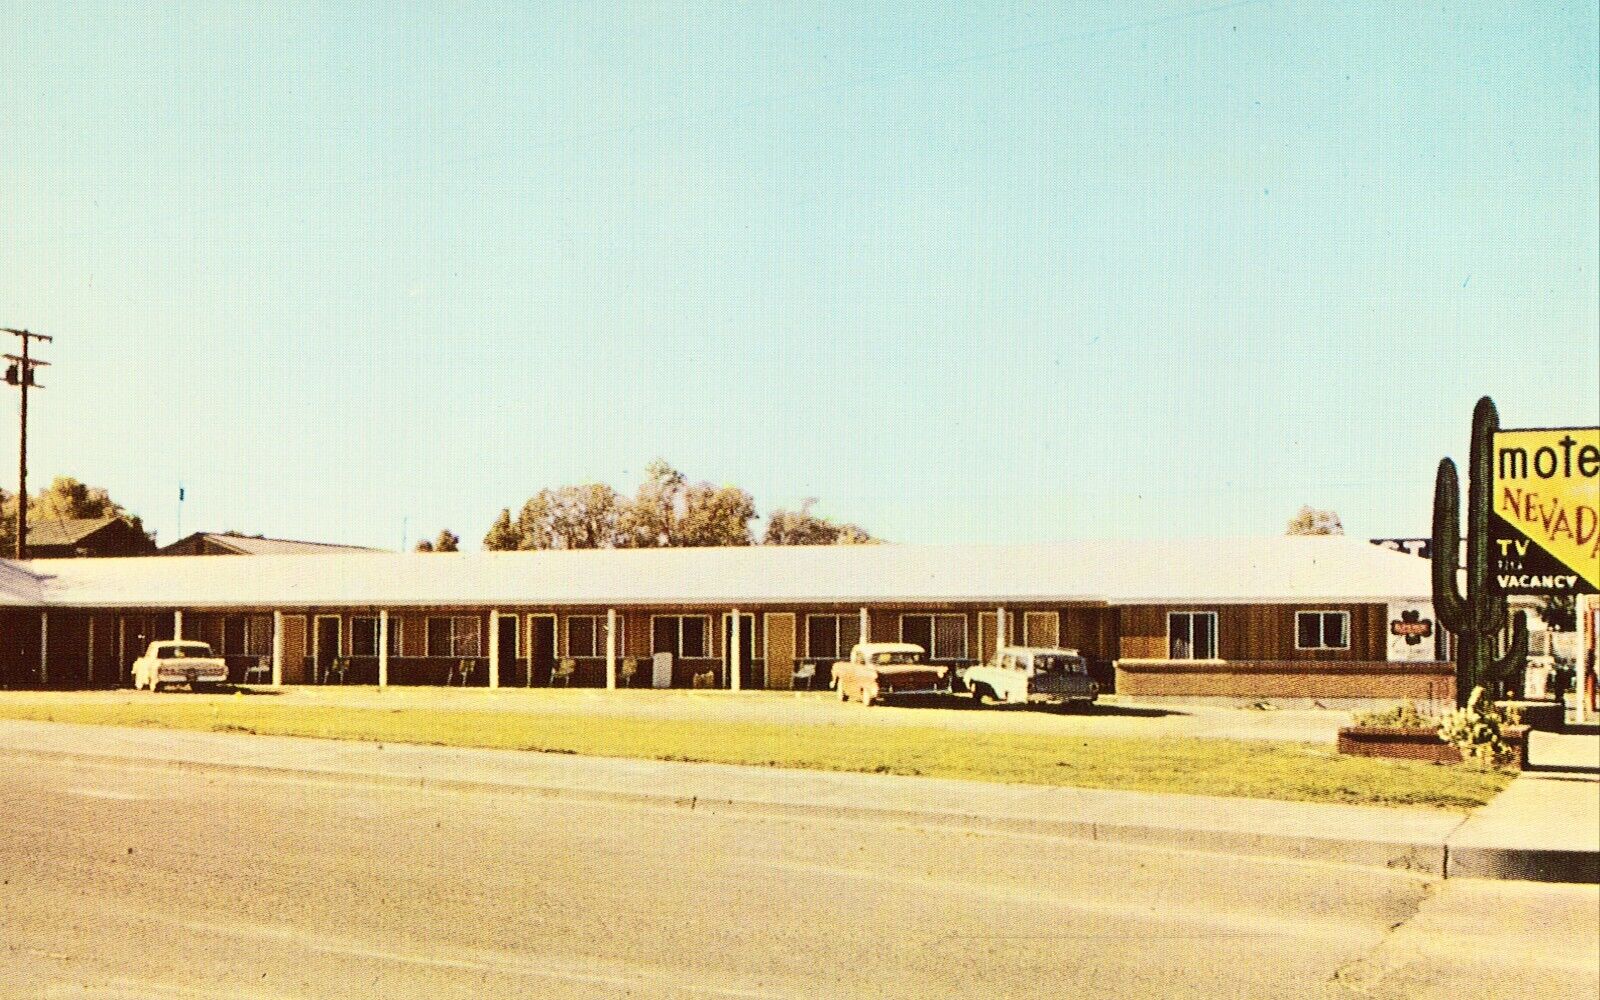 Motel Nevada - Winnemucca, Nevada Vintage Postcard